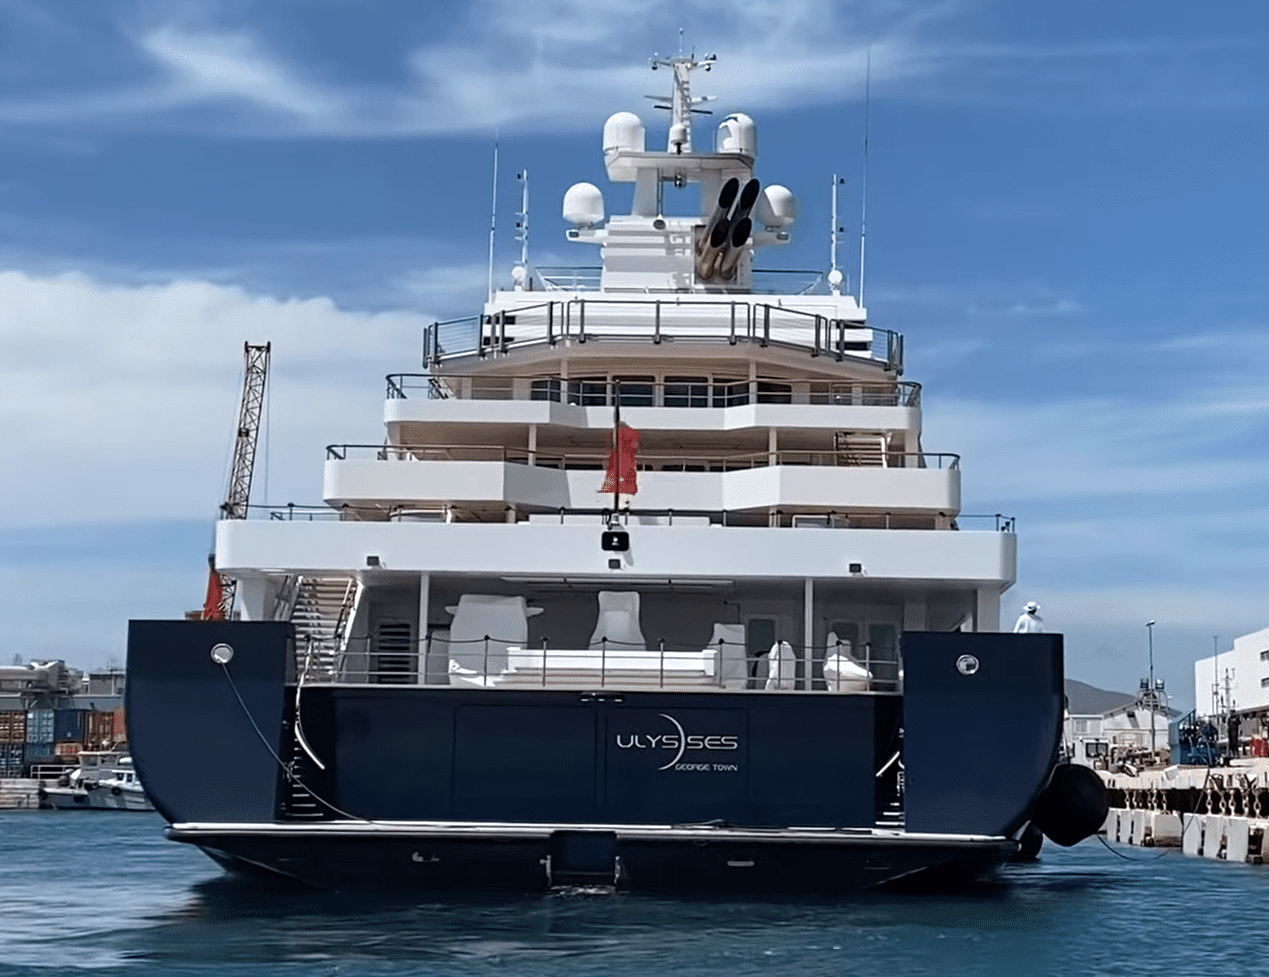 mega yacht ulysses owner